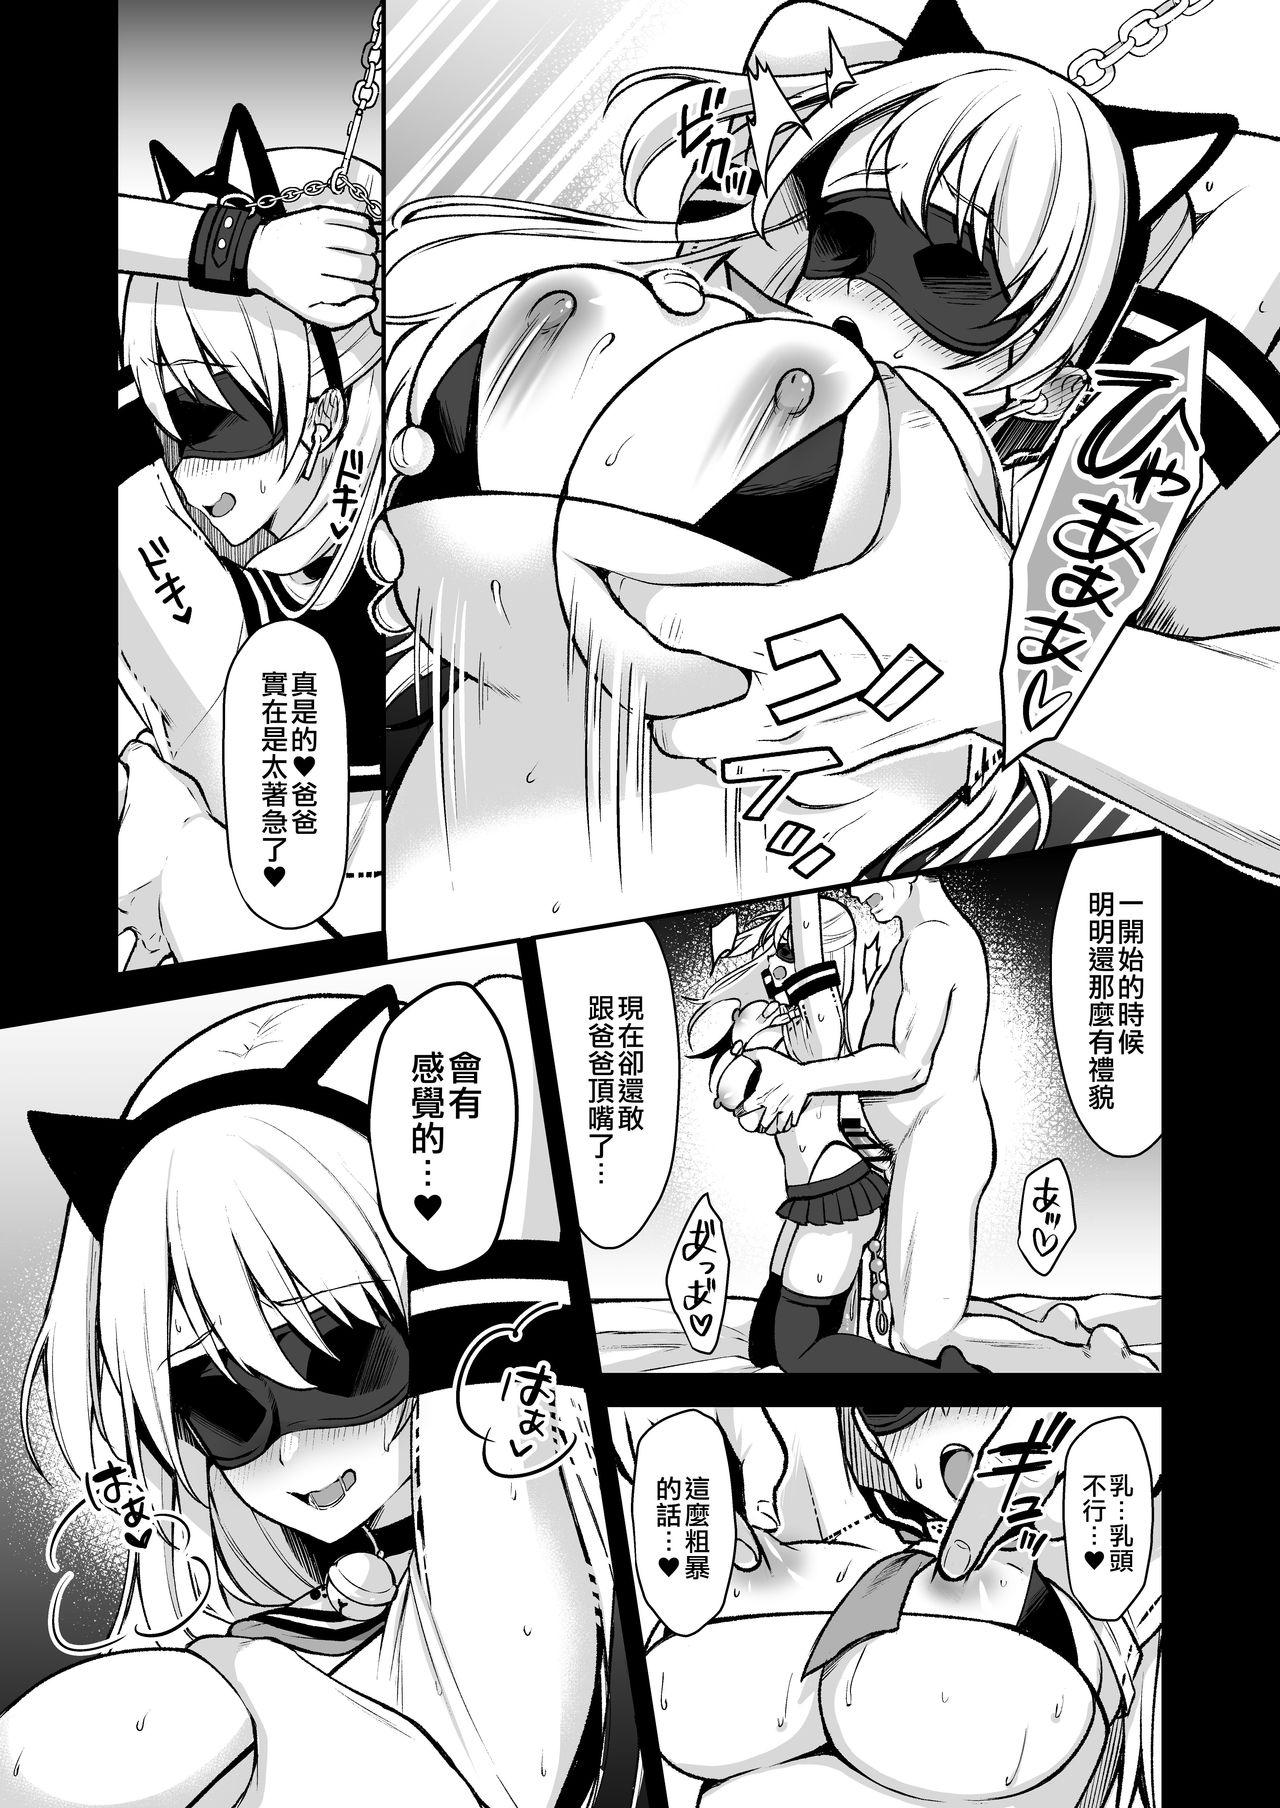 Innocent Himitsu 4 - Original Hotporn - Page 4